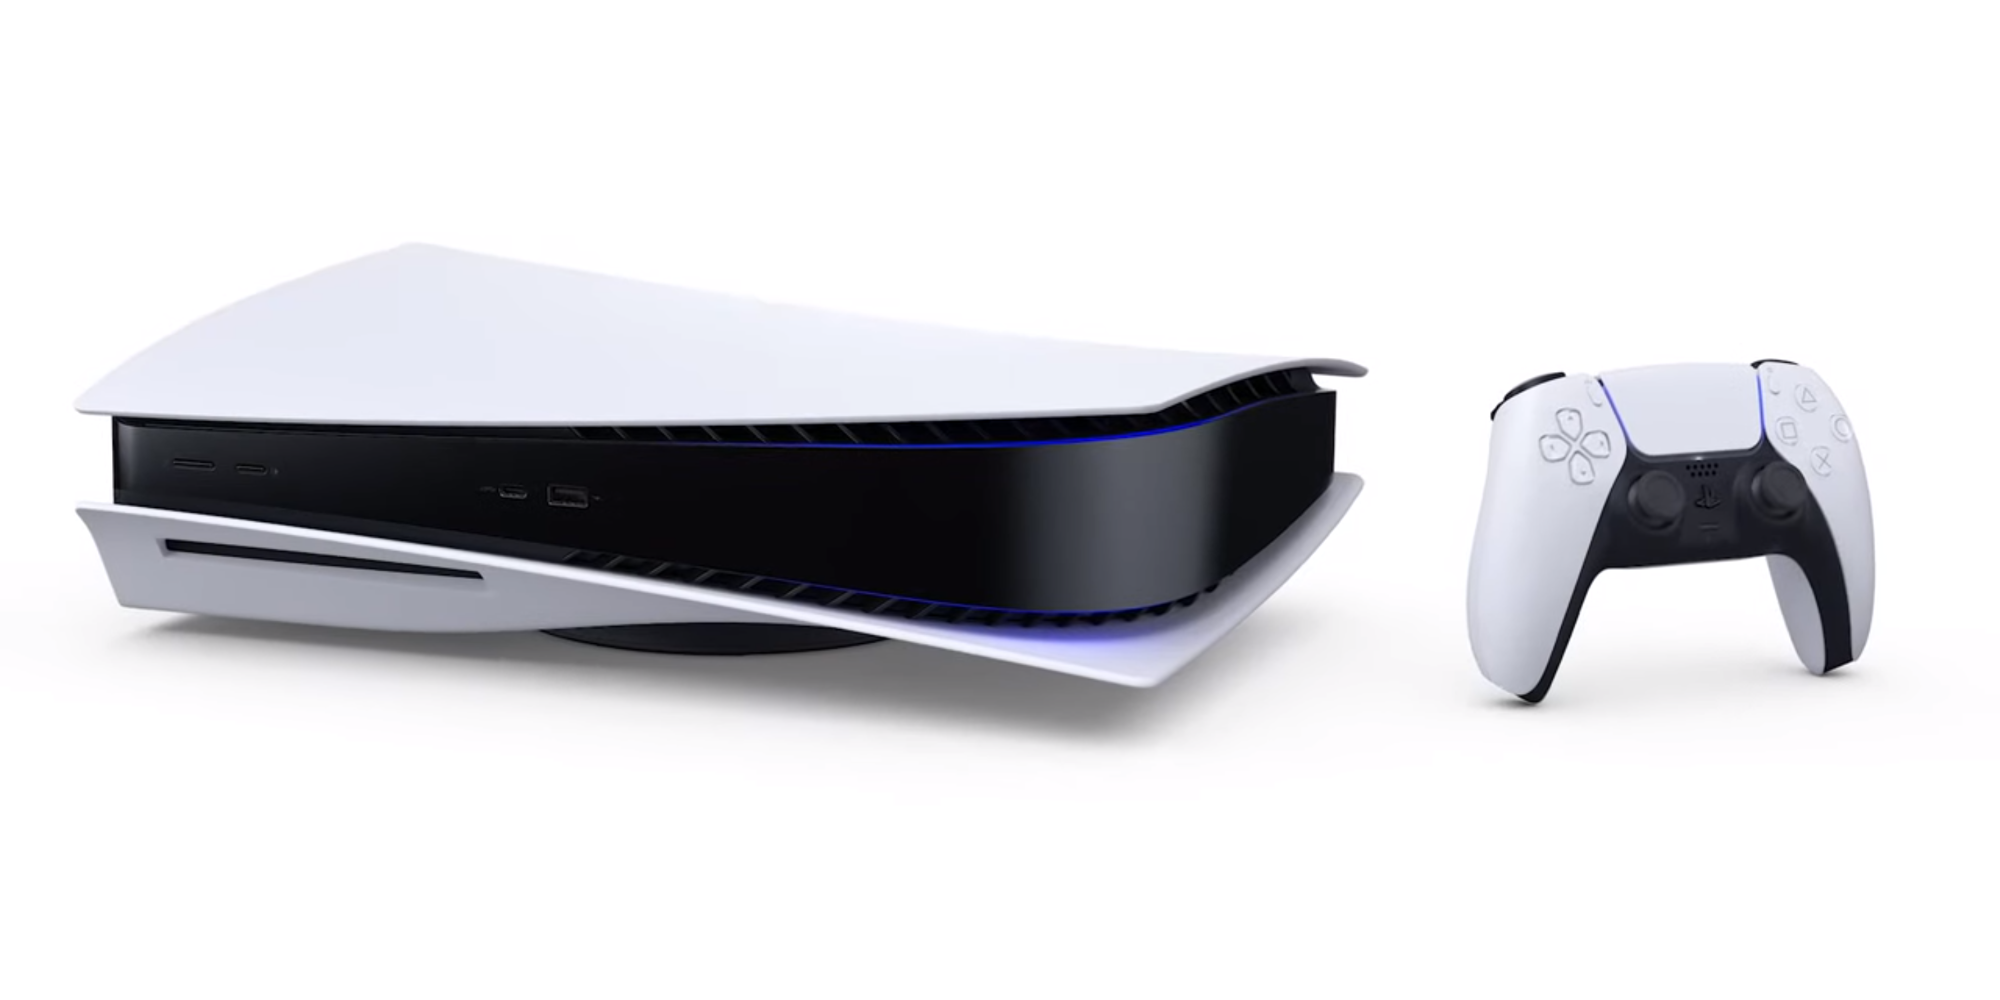 เปิดราคาแผ่นเกมเครื่อง PlayStation 5 และ Xbox Series X ราว 2,175 บาทแพงขึ้นกว่าเดิมราว 310 บาท | Flashfly Dot Net